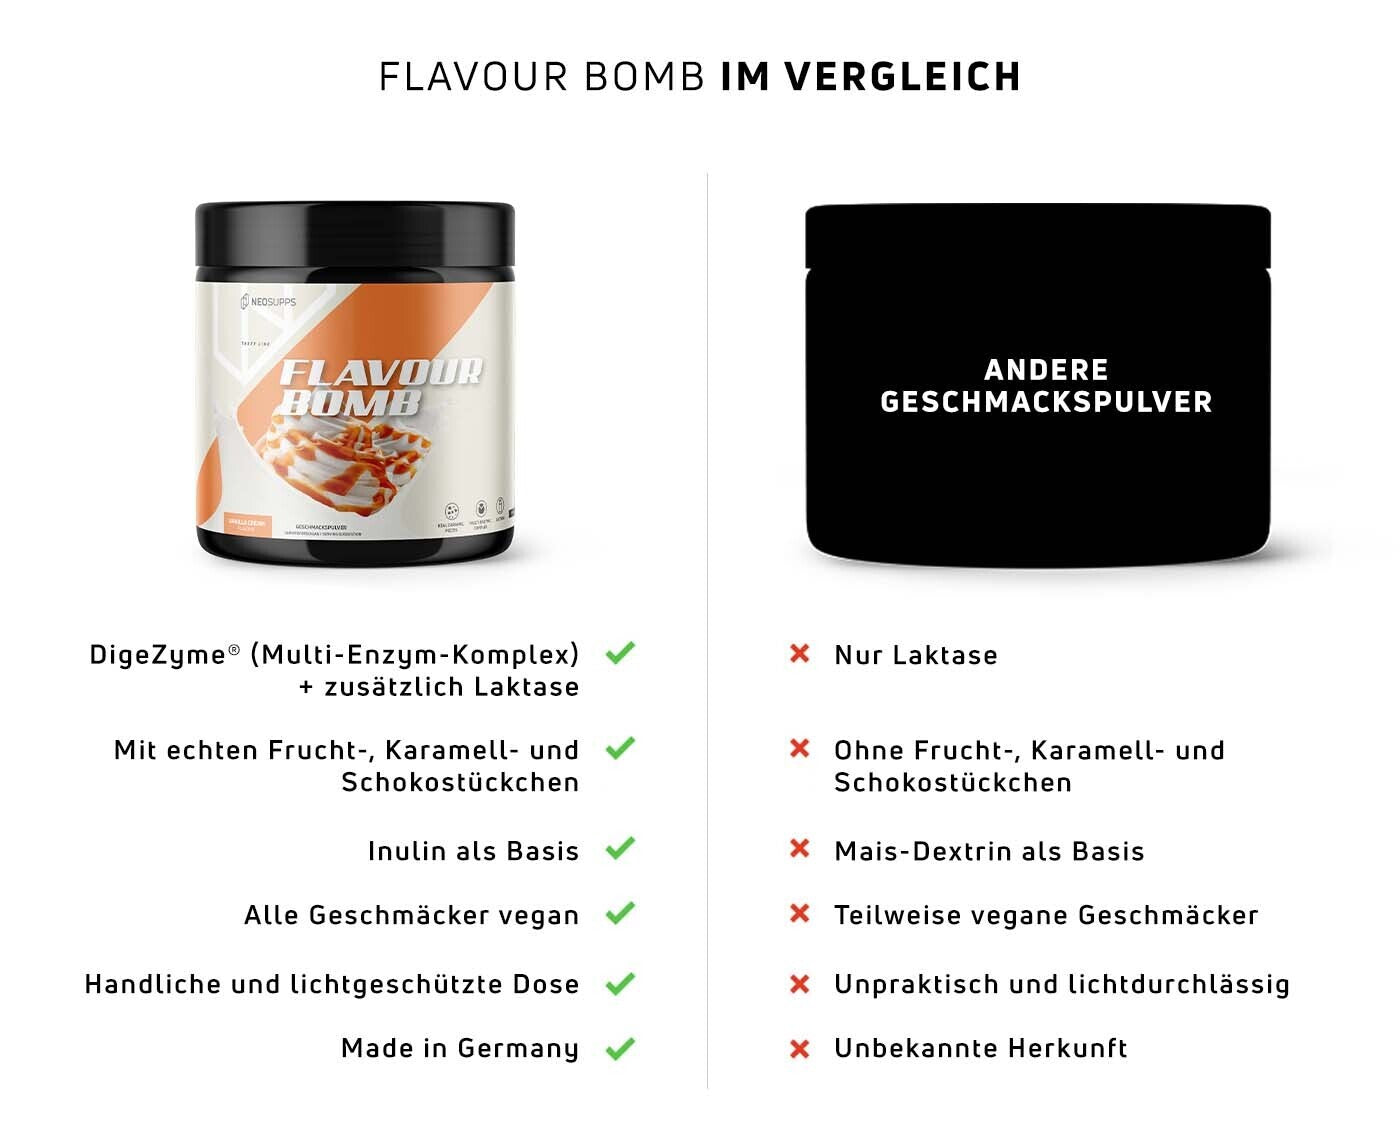 Flavor Bomb Vergleich